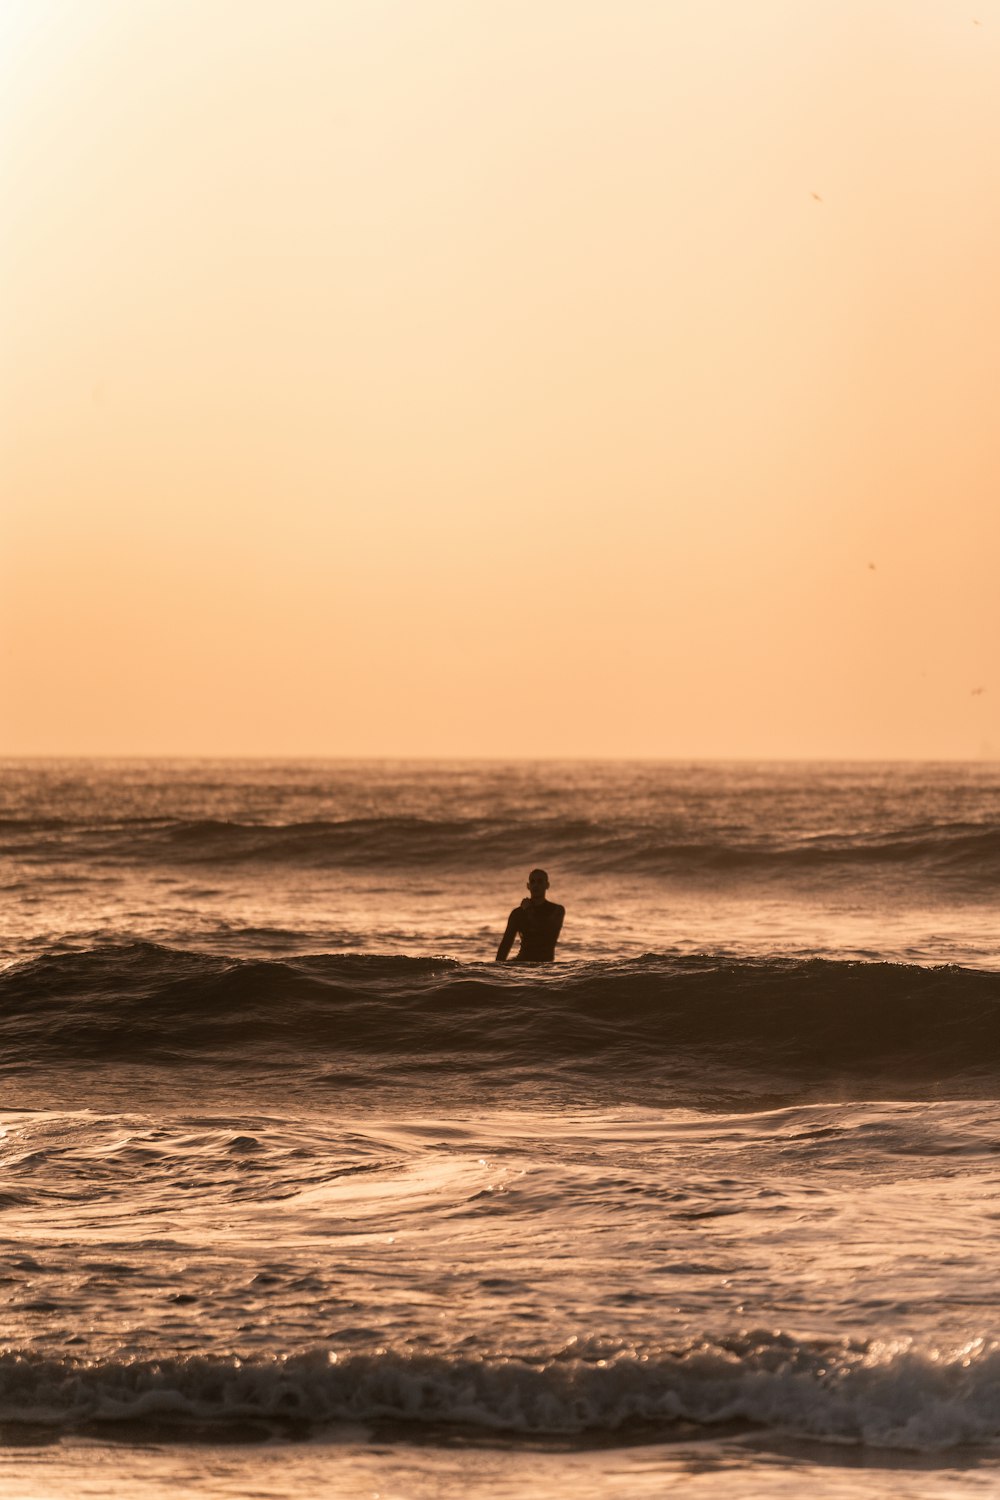 uma pessoa surfando no mar